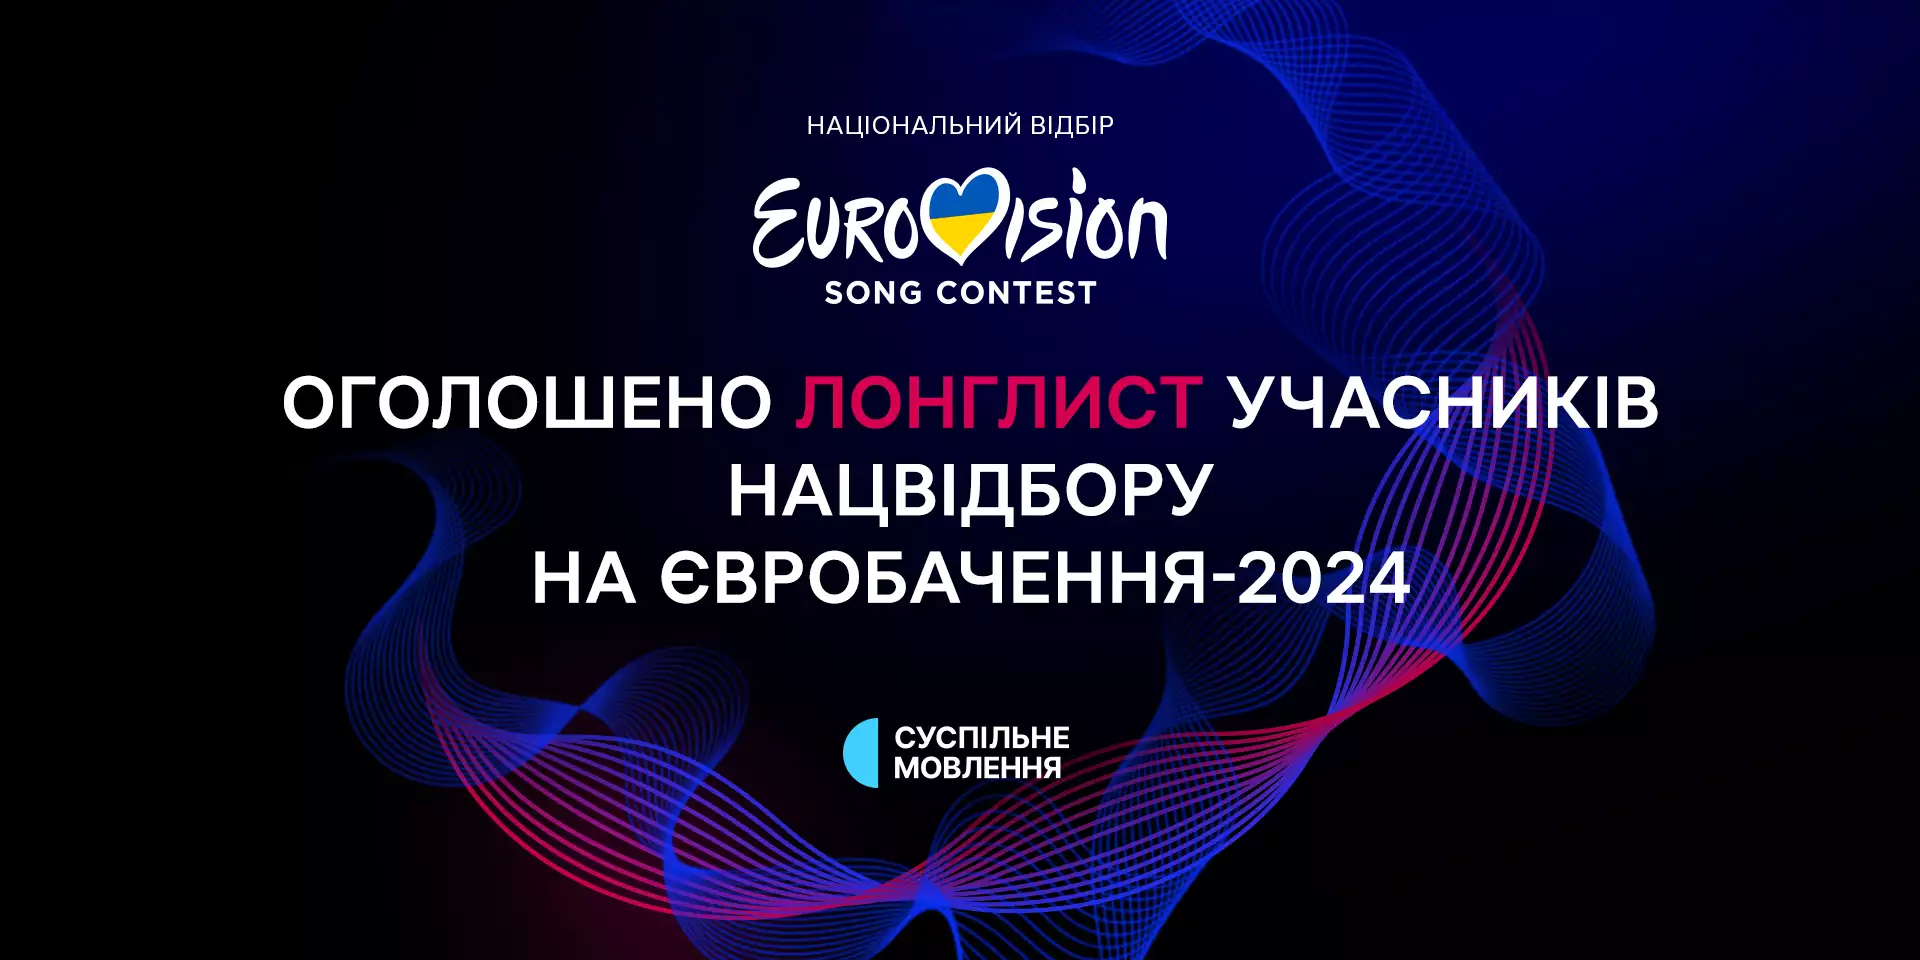 Оголошено довгий список учасників Нацвідбору на «Євробачення-2024»